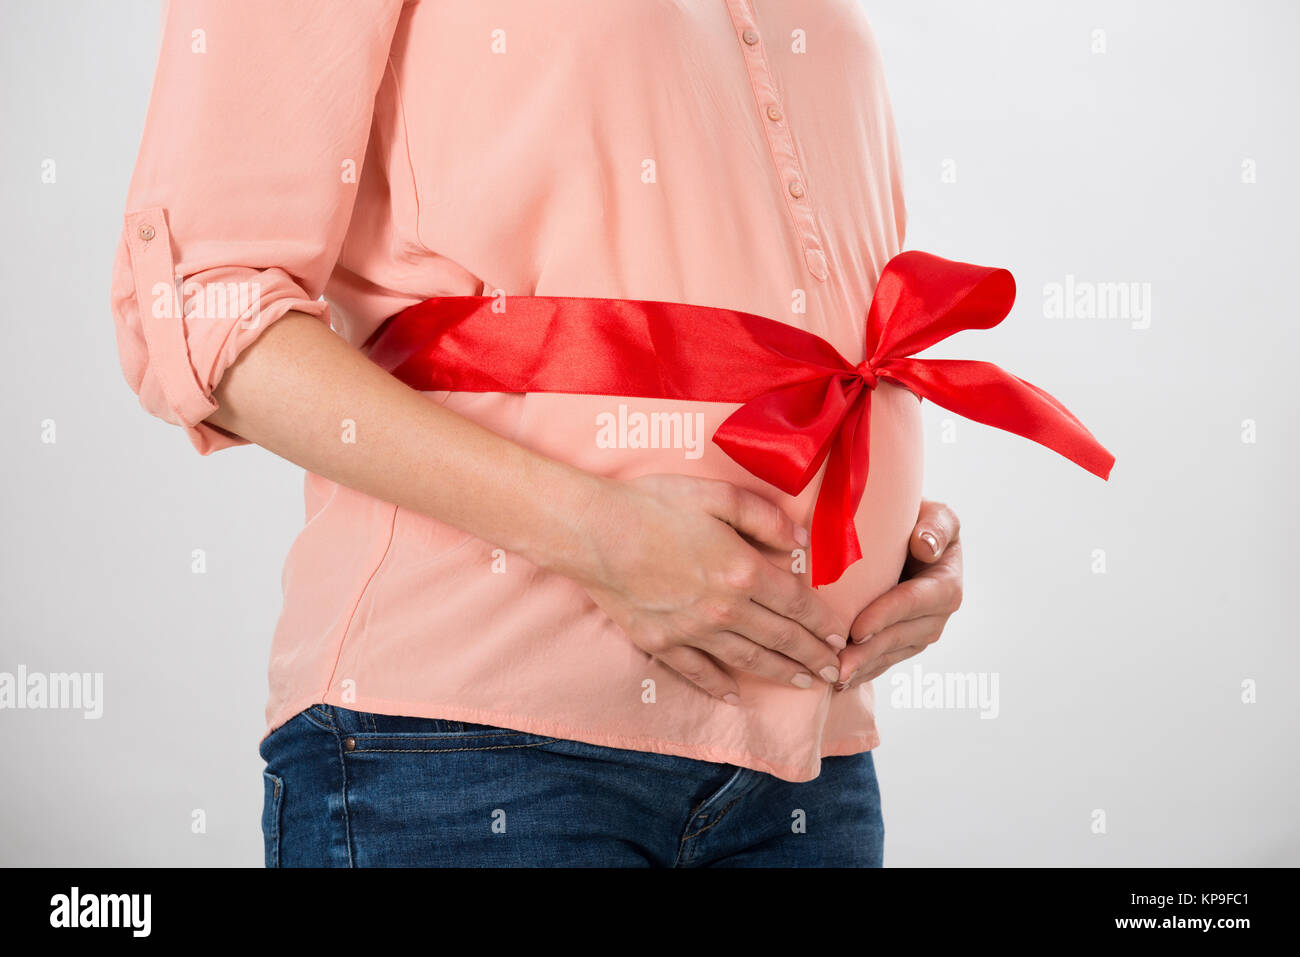 Femme enceinte avec ruban rouge liée au ventre Photo Stock - Alamy